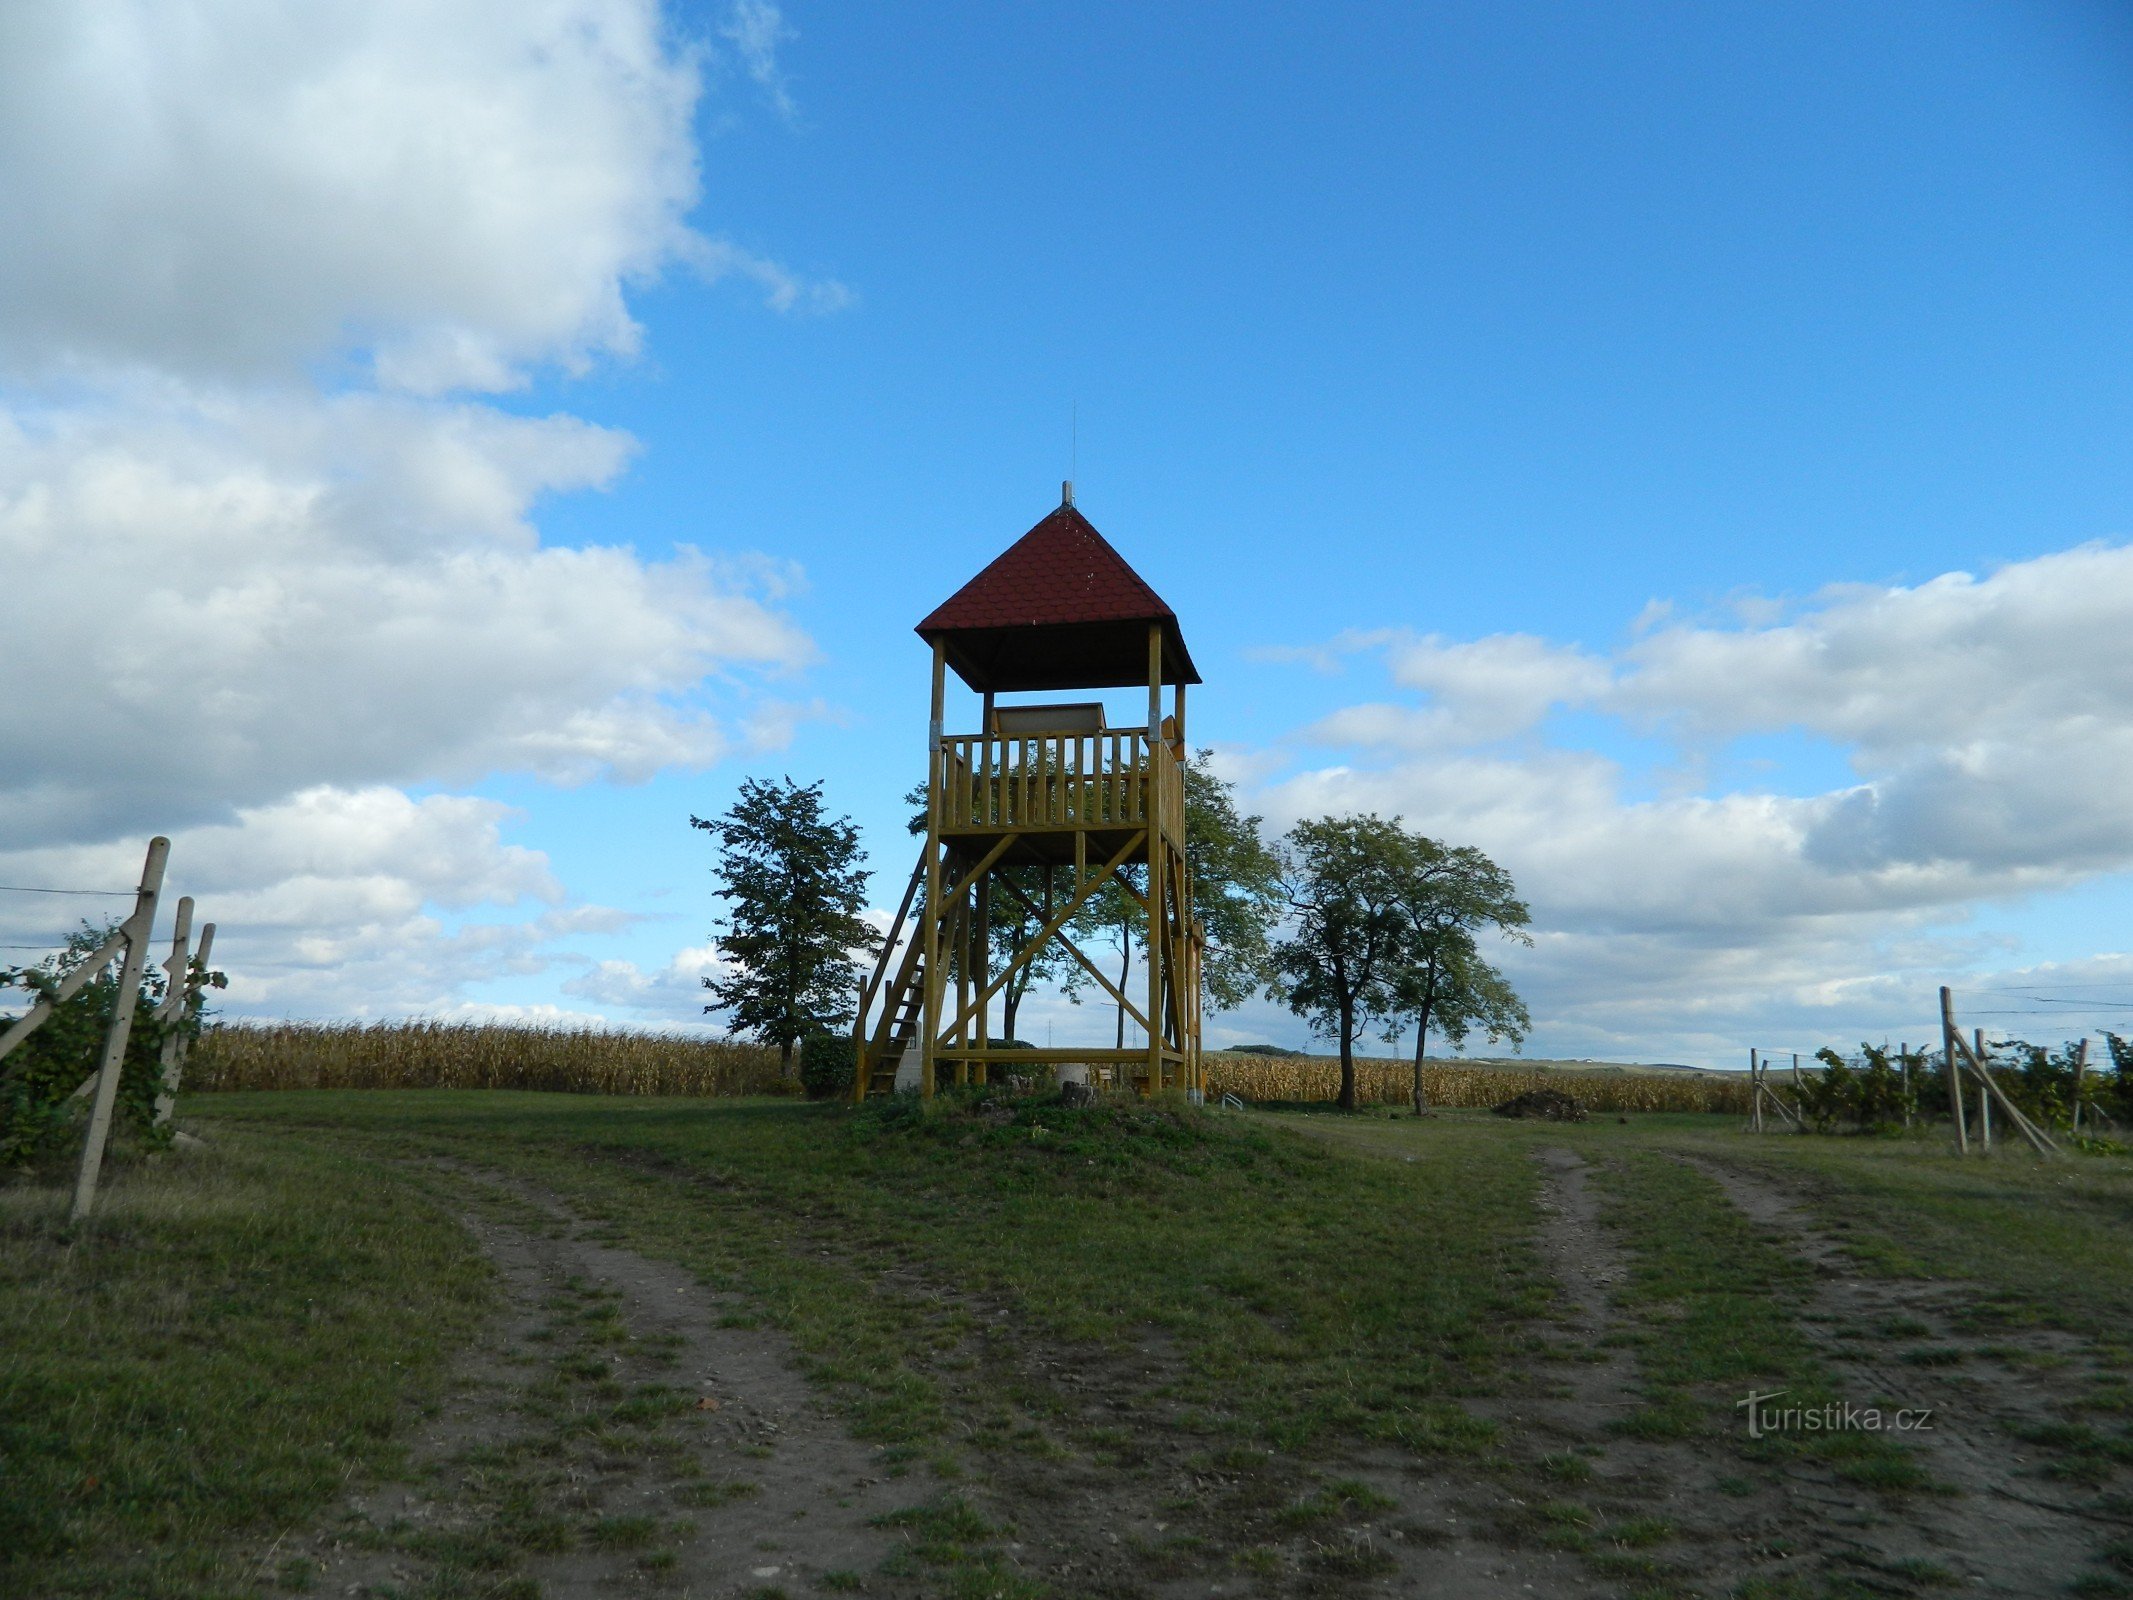 图片中的瞭望塔